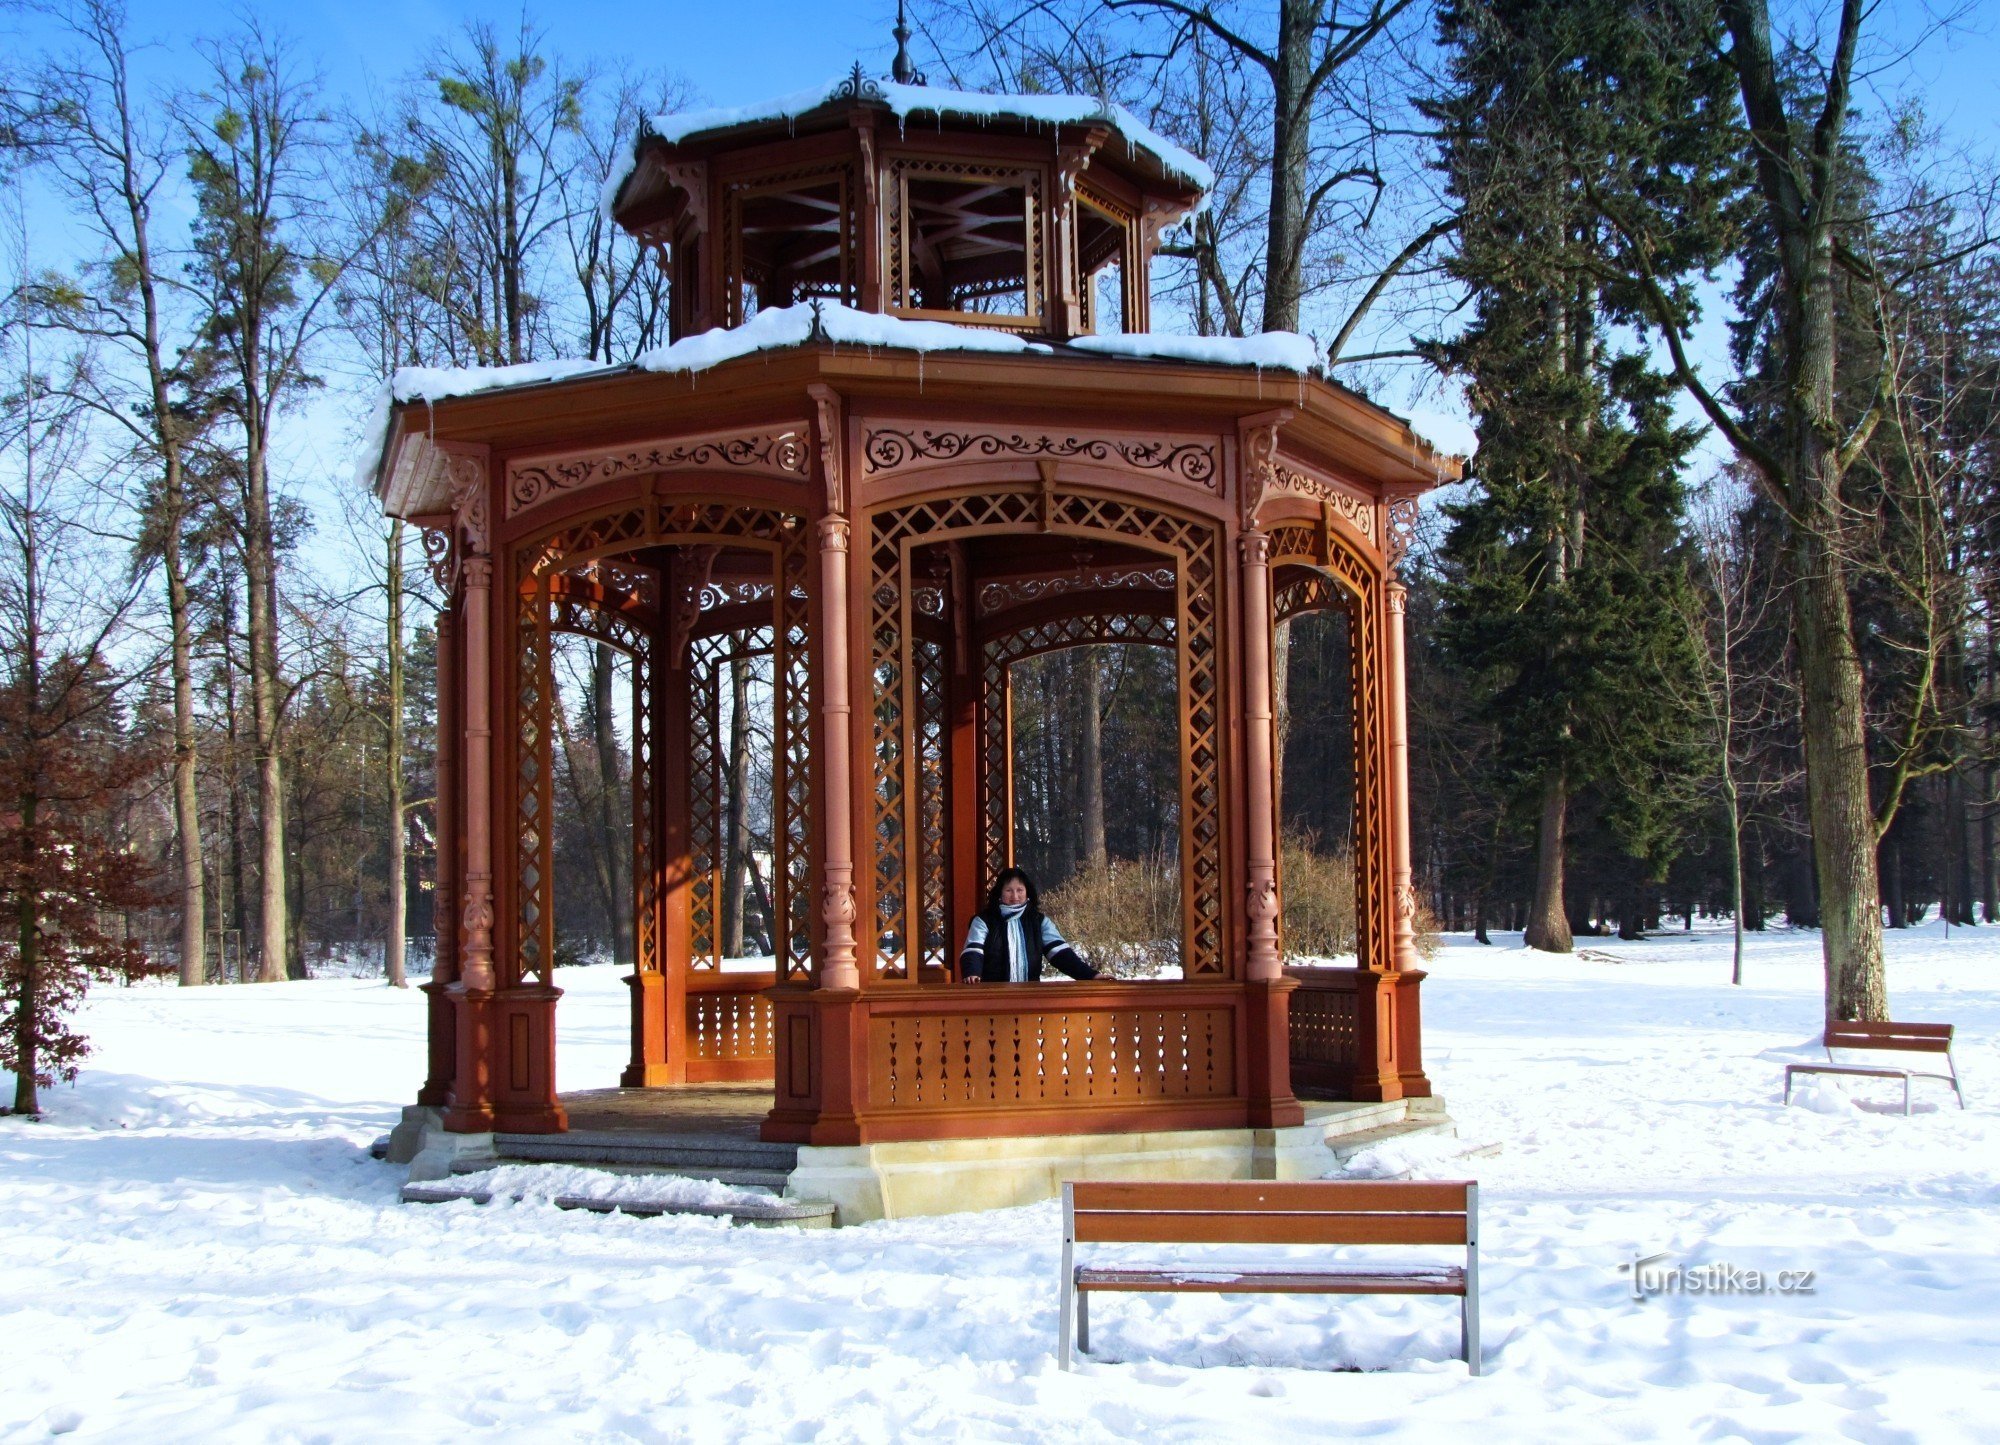 Χειμερινός περίπατος - Βλαχικό μουσείο στη φύση - στο Rožnov pod Radhoštěm